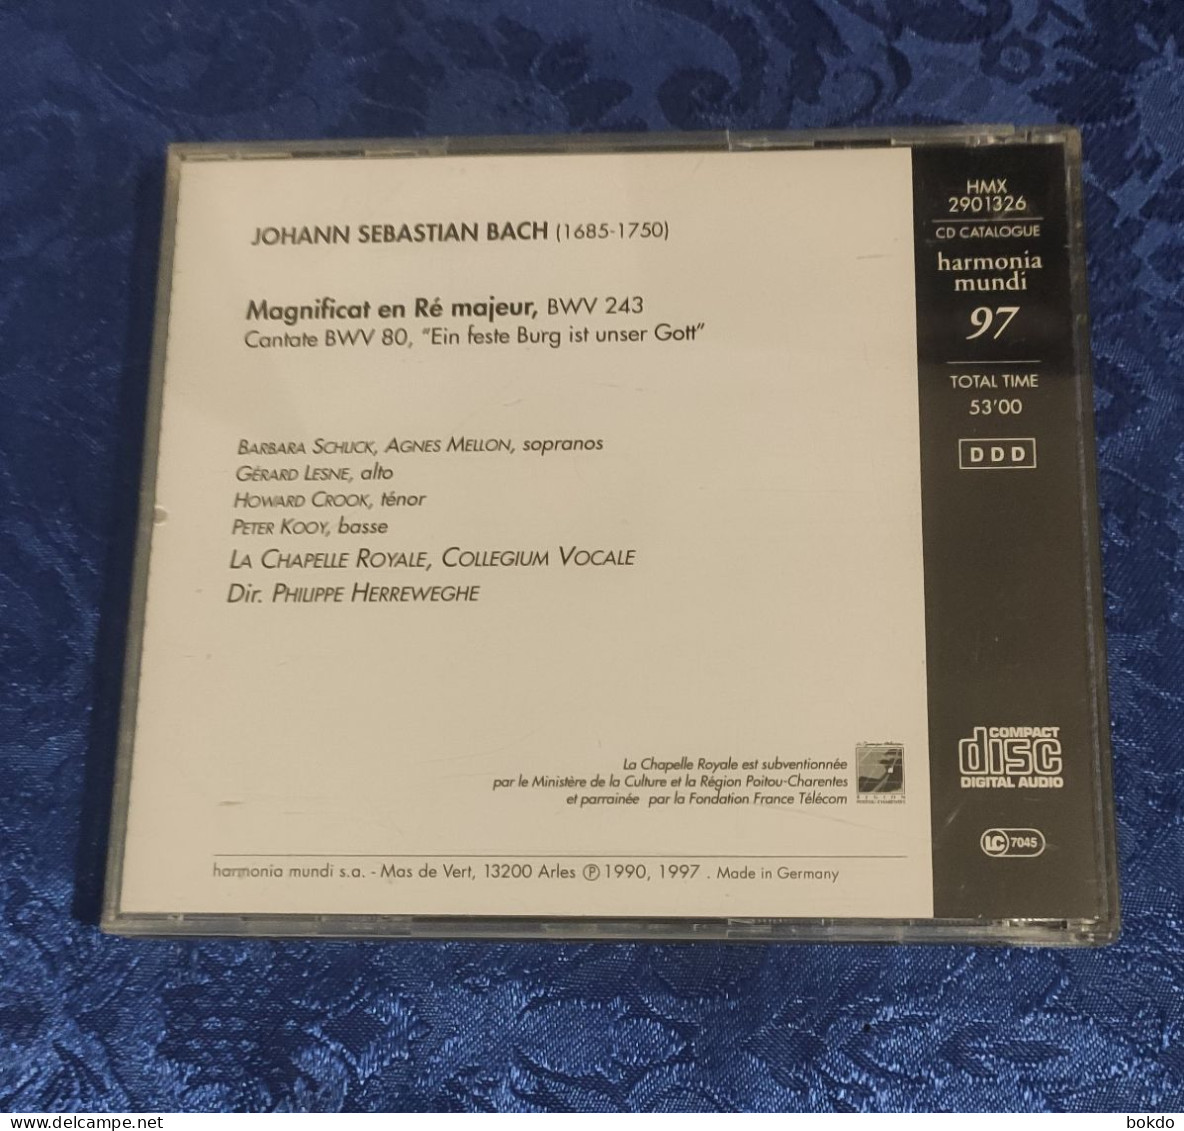 Johann Sébastian BACH - Magnificat - Classical